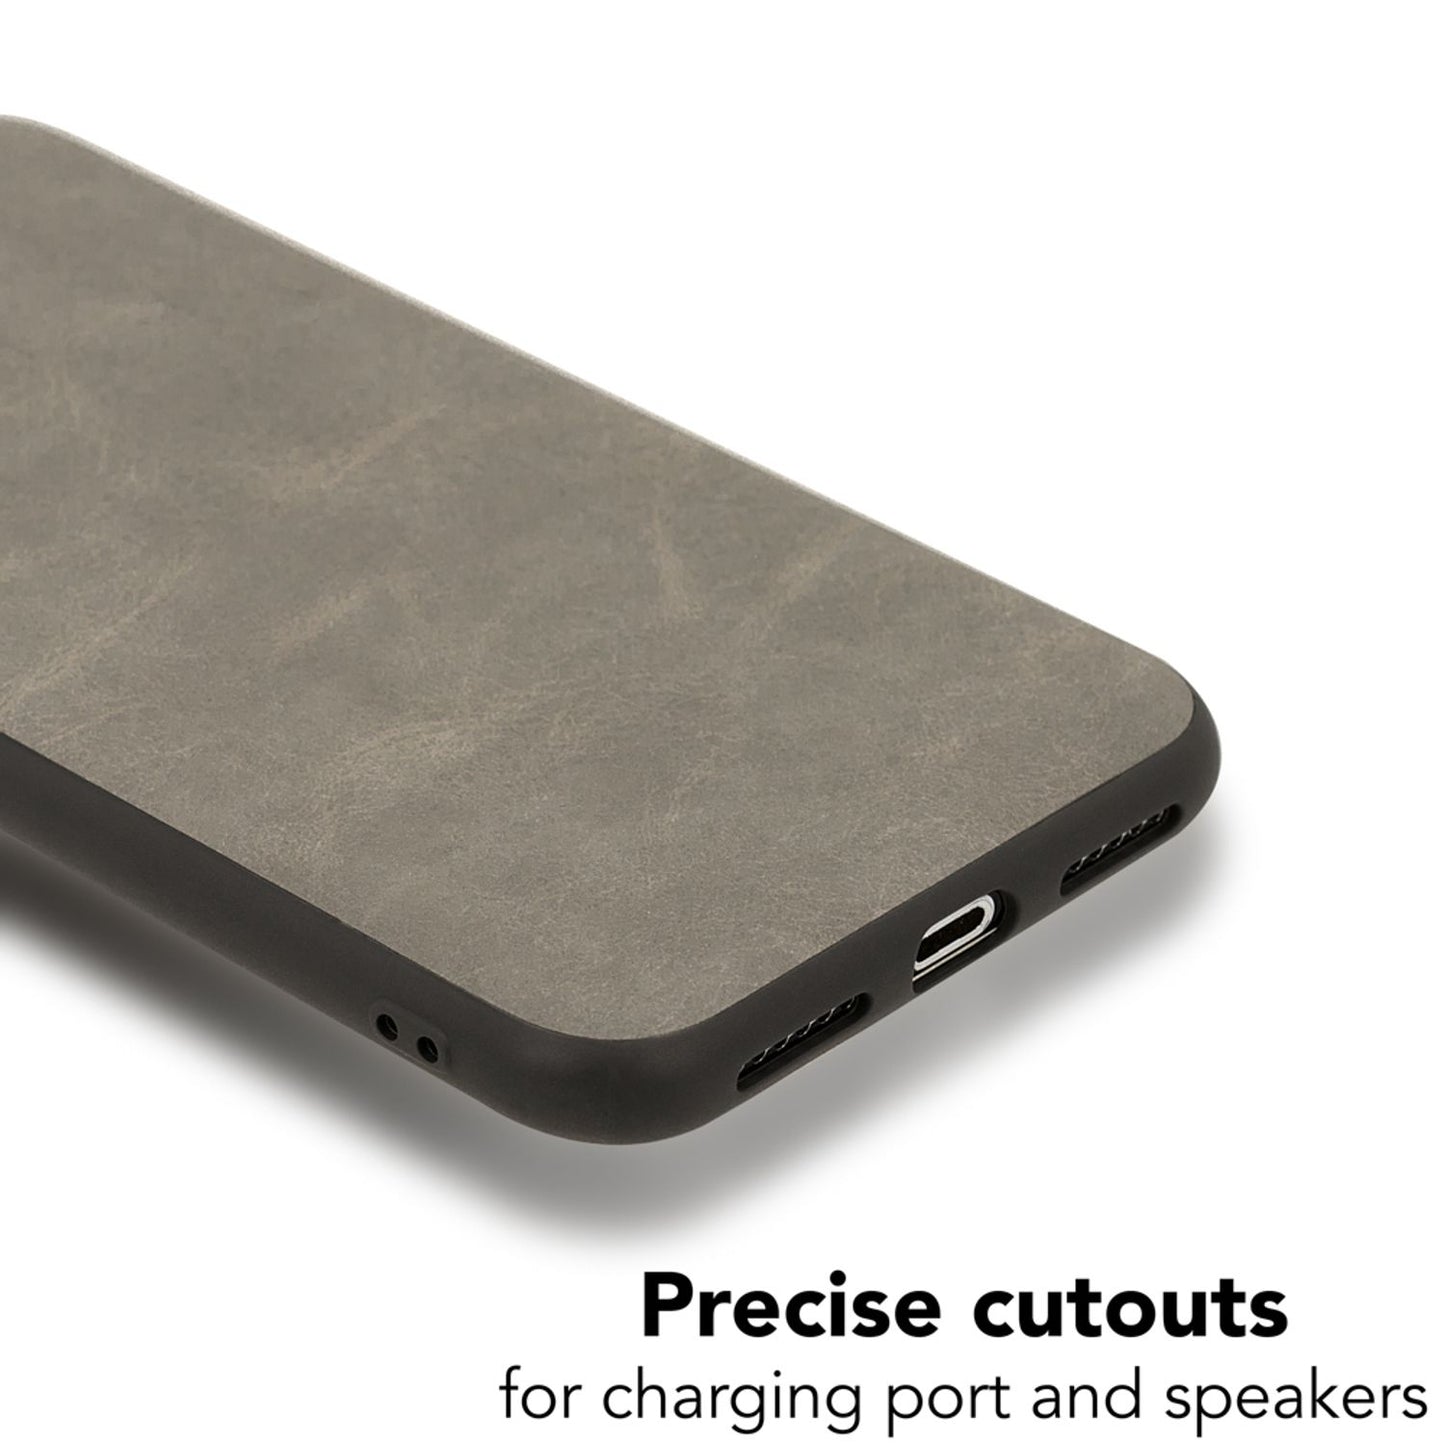 NALIA Kunstleder Hülle für iPhone X / XS, Slim Schutz Case Handy Cover Bumper